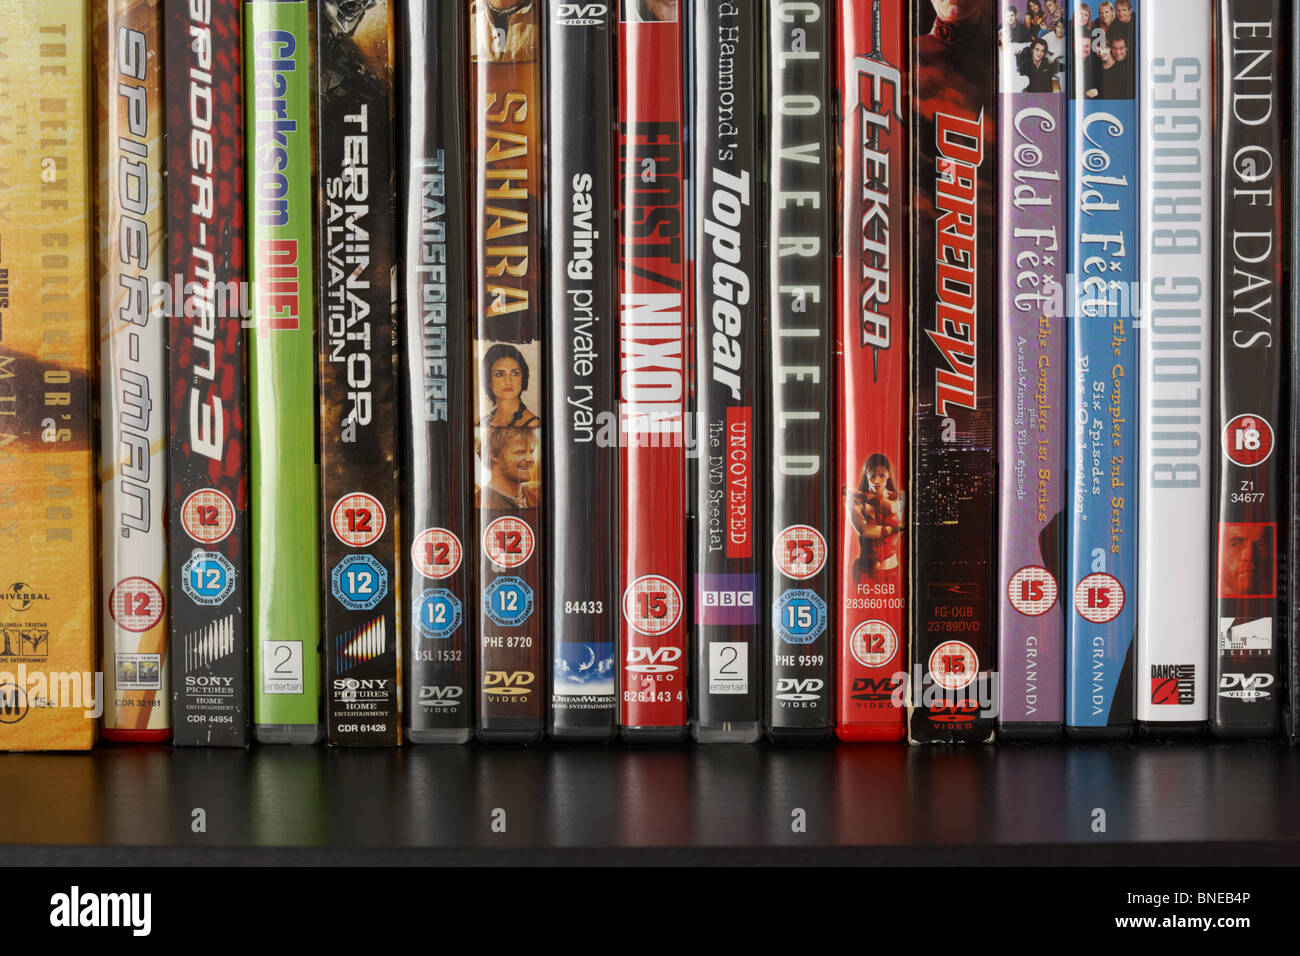 Fila de casos de vídeo DVD en un estante mostrando una gama de BBFC y irish film censores clasificación de oficina avisos desde el reino unido Foto de stock